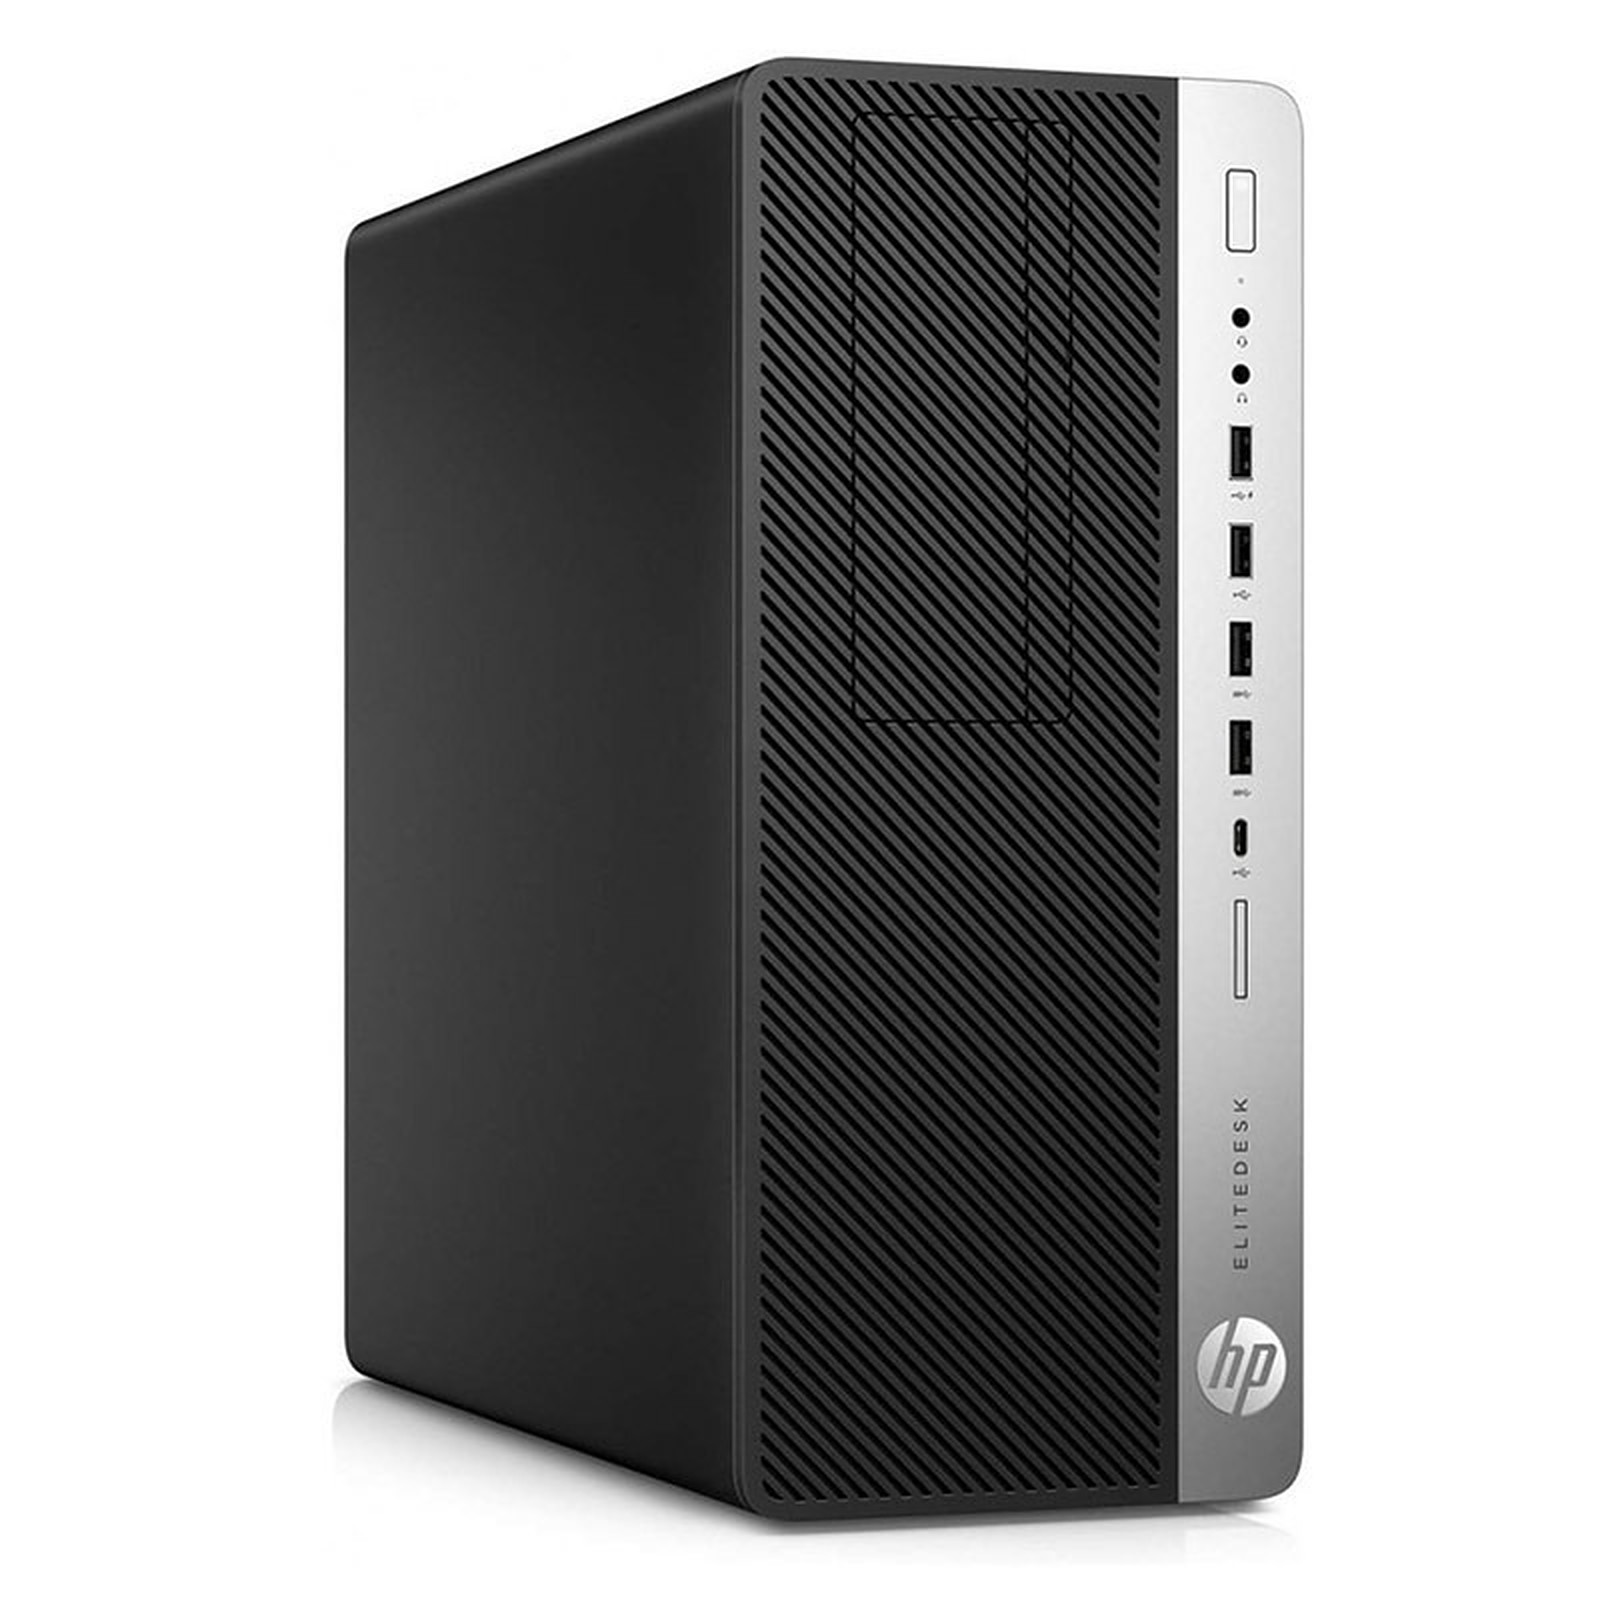 HP LPG-800G3 (I56583S) · Reconditionne - PC de bureau reconditionne HP